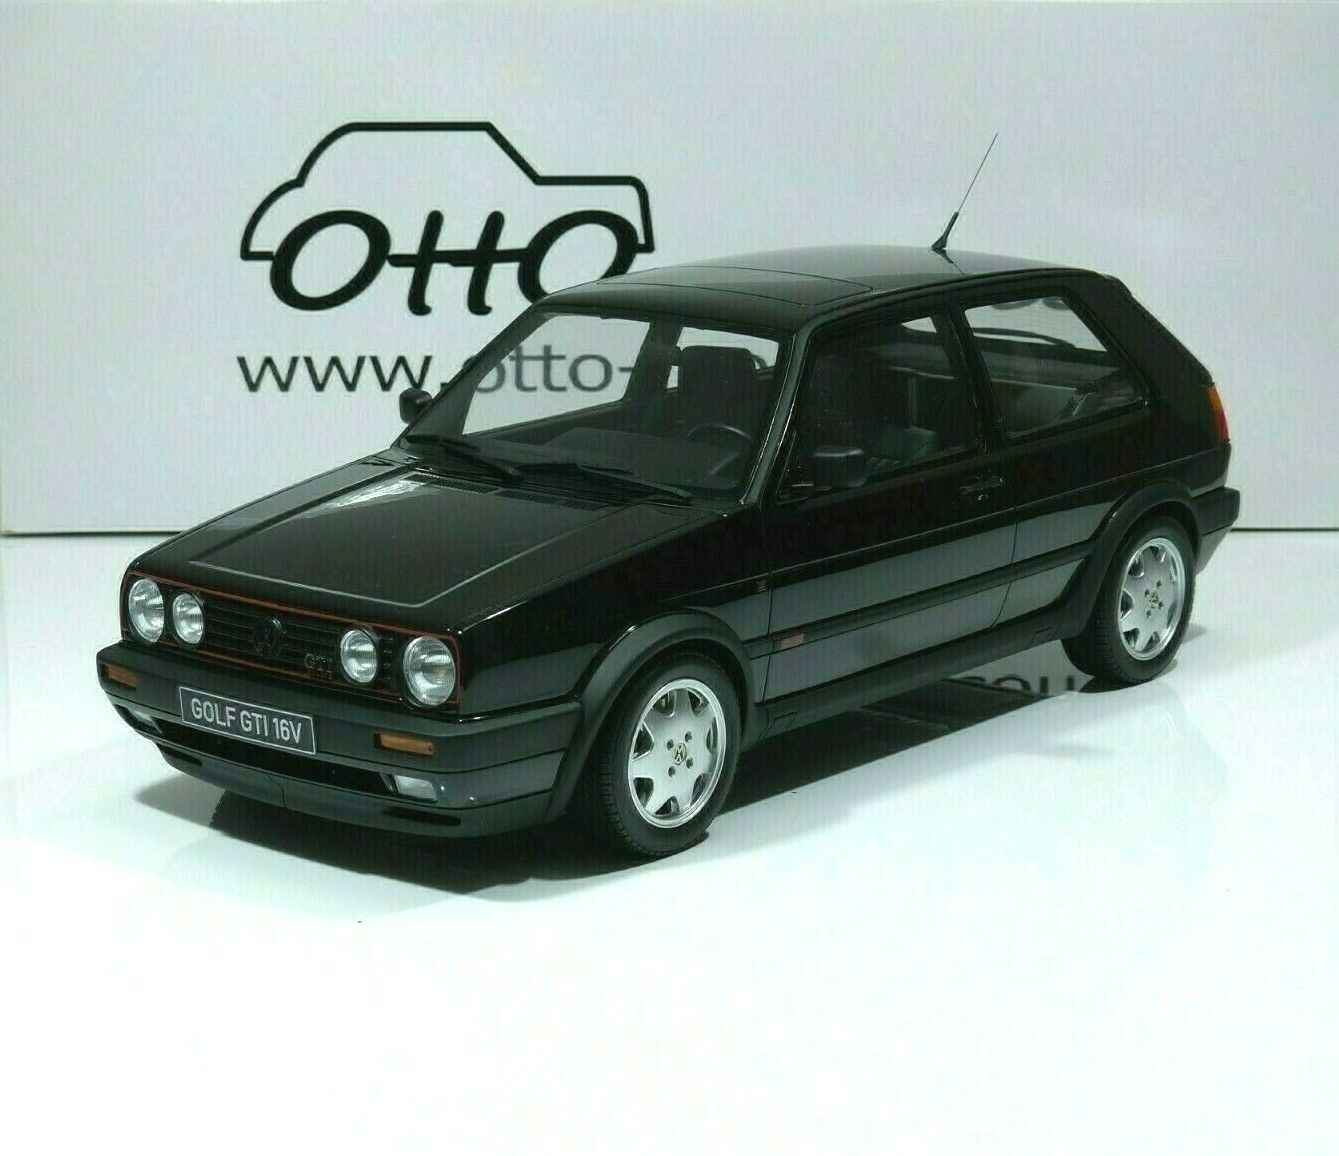 Volkswagen II Gti 16V Year 1985 Black OttO-mobile 9580010206858 | eBay